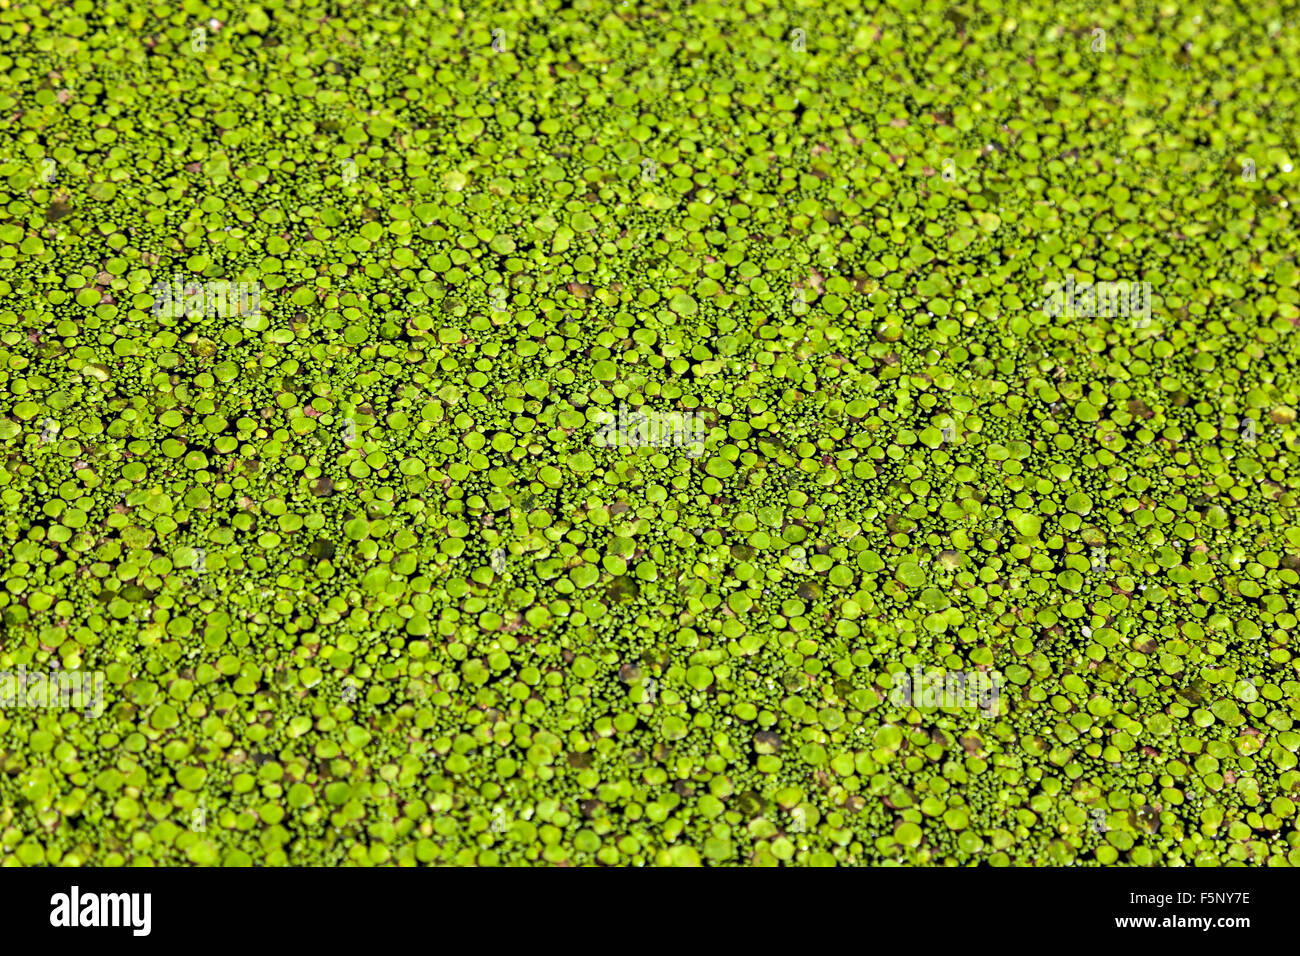 Duckweed on water Stock Photo